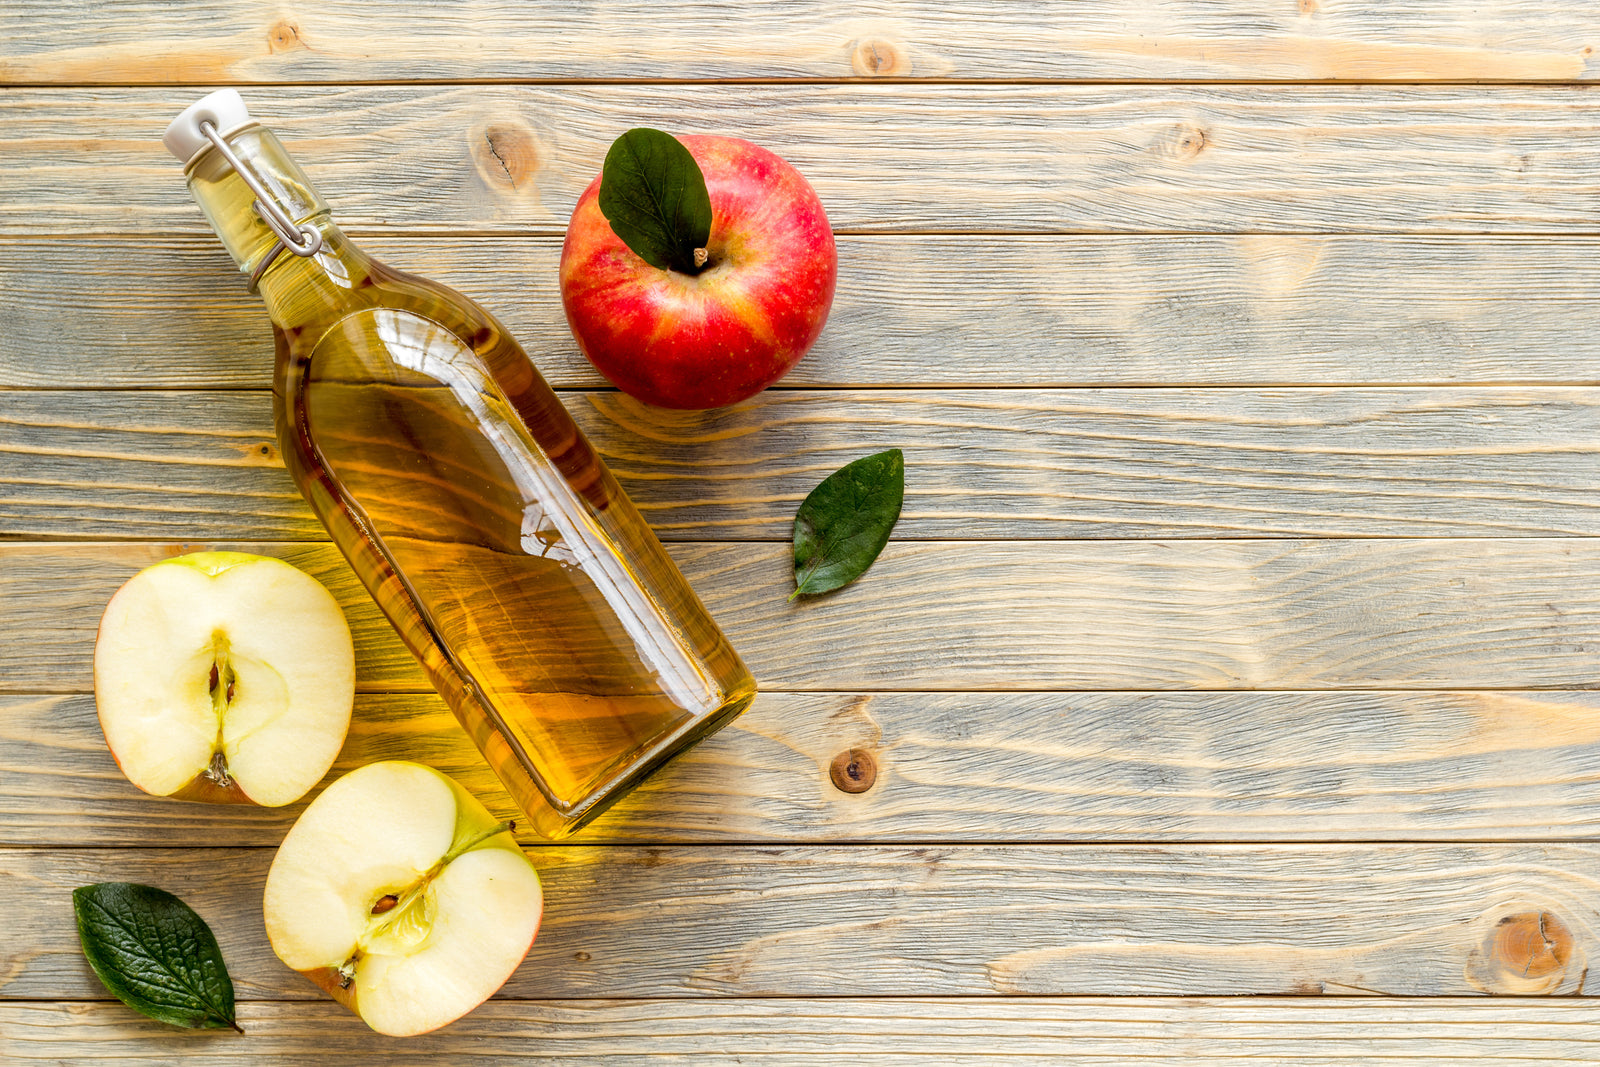 Does Apple Cider Vinegar Improve Gut Health?